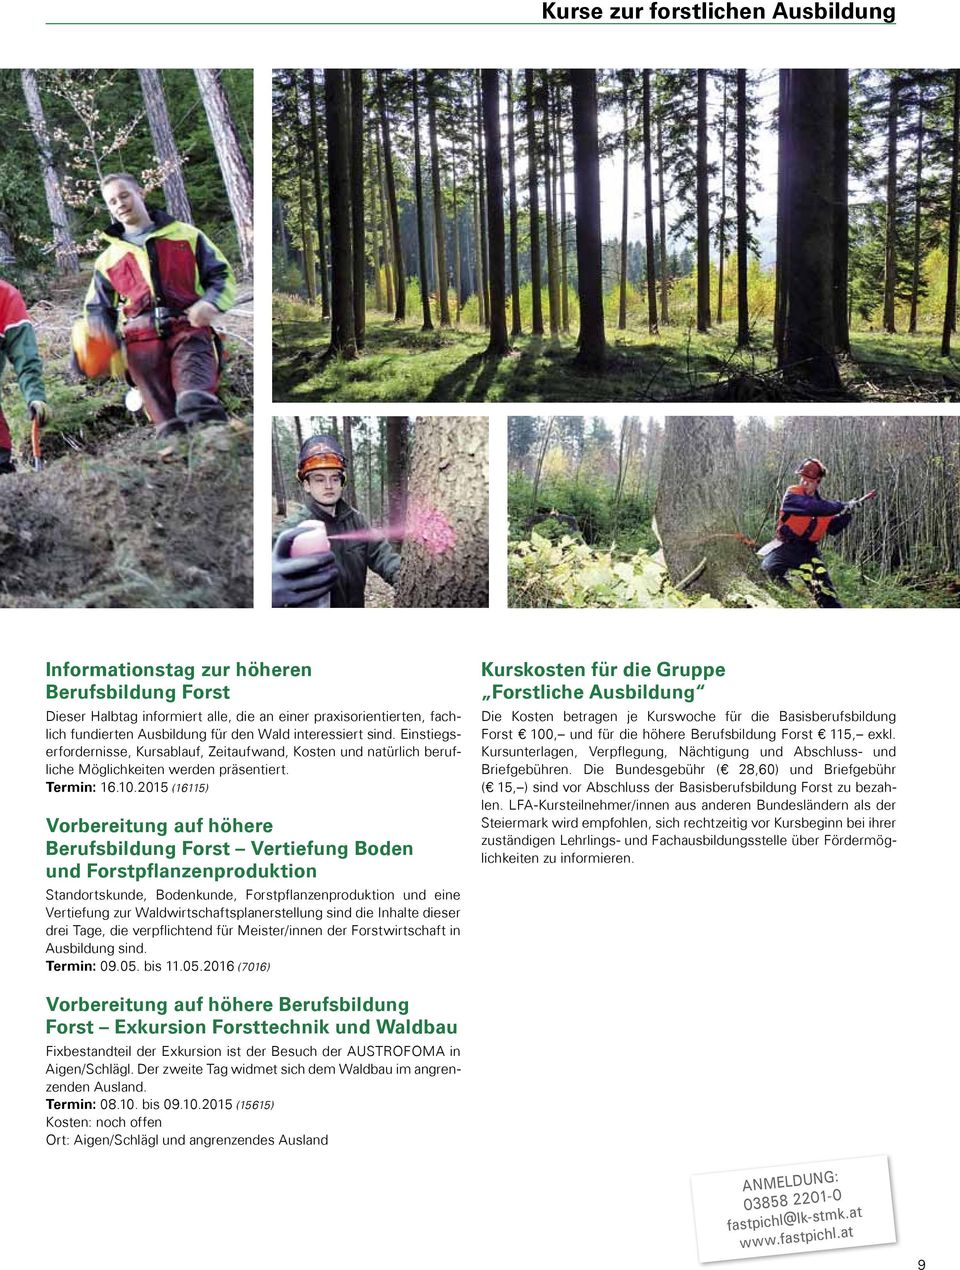 2015 (16115) Vorbereitung auf höhere Berufsbildung Forst Vertiefung Boden und Forstpflanzenproduktion Standortskunde, Bodenkunde, Forstpflanzenproduktion und eine Vertiefung zur